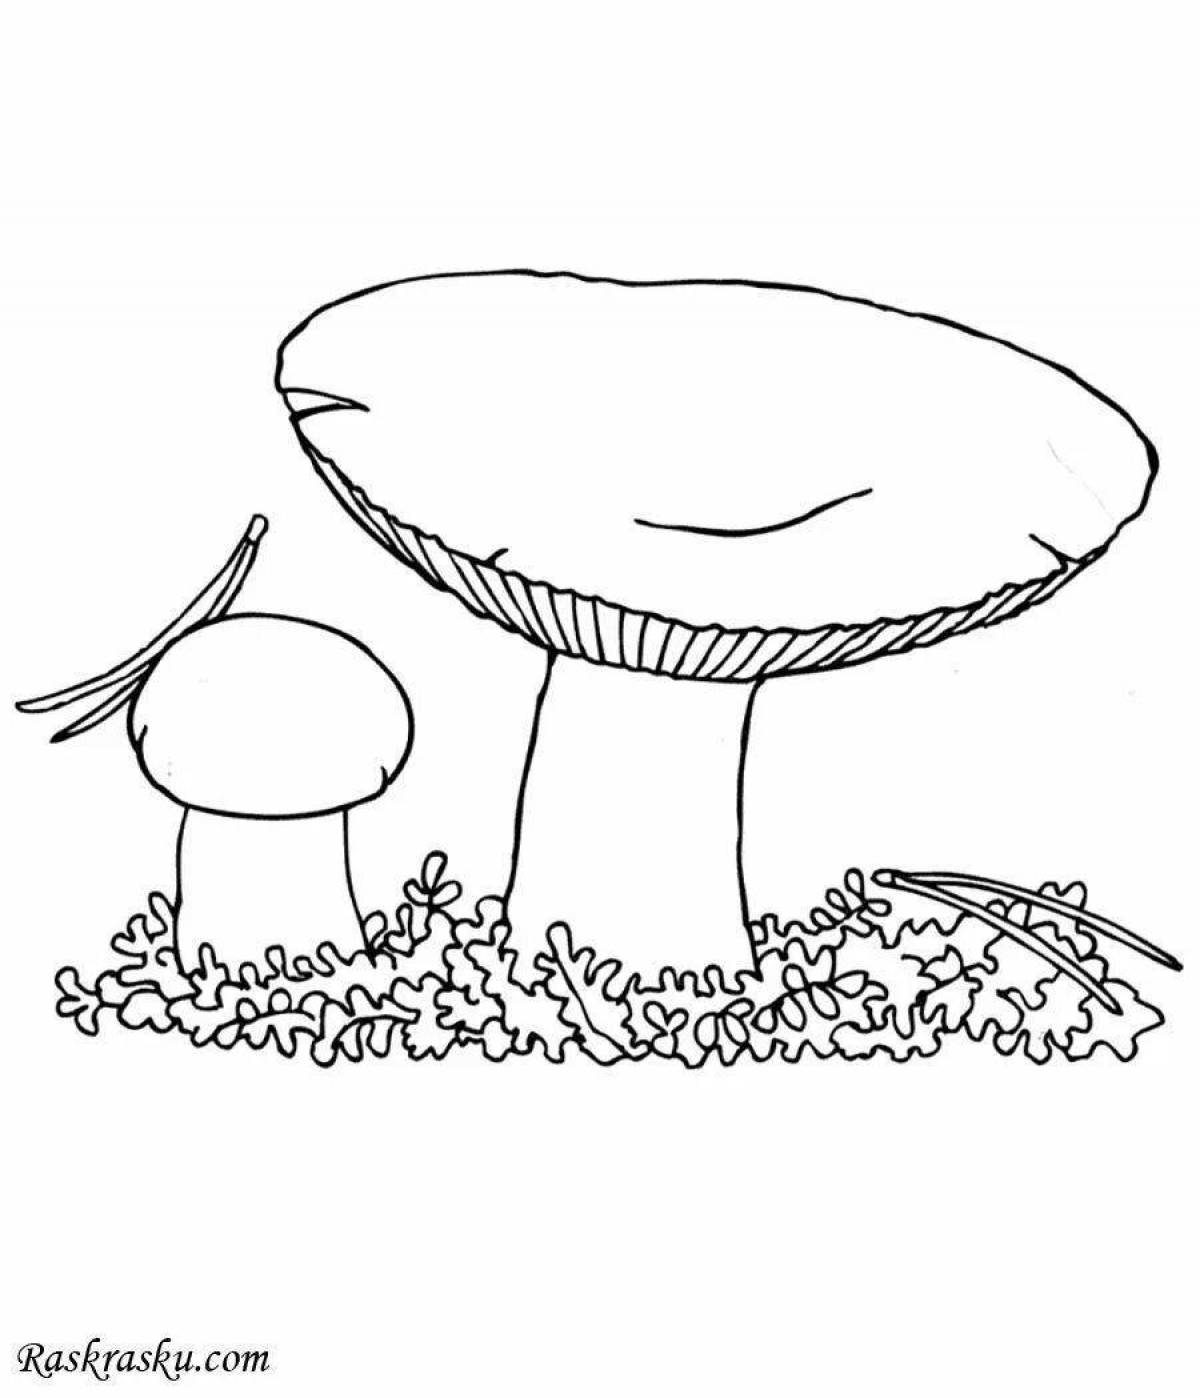 Изысканная раскраска грибов для детей 6-7 лет